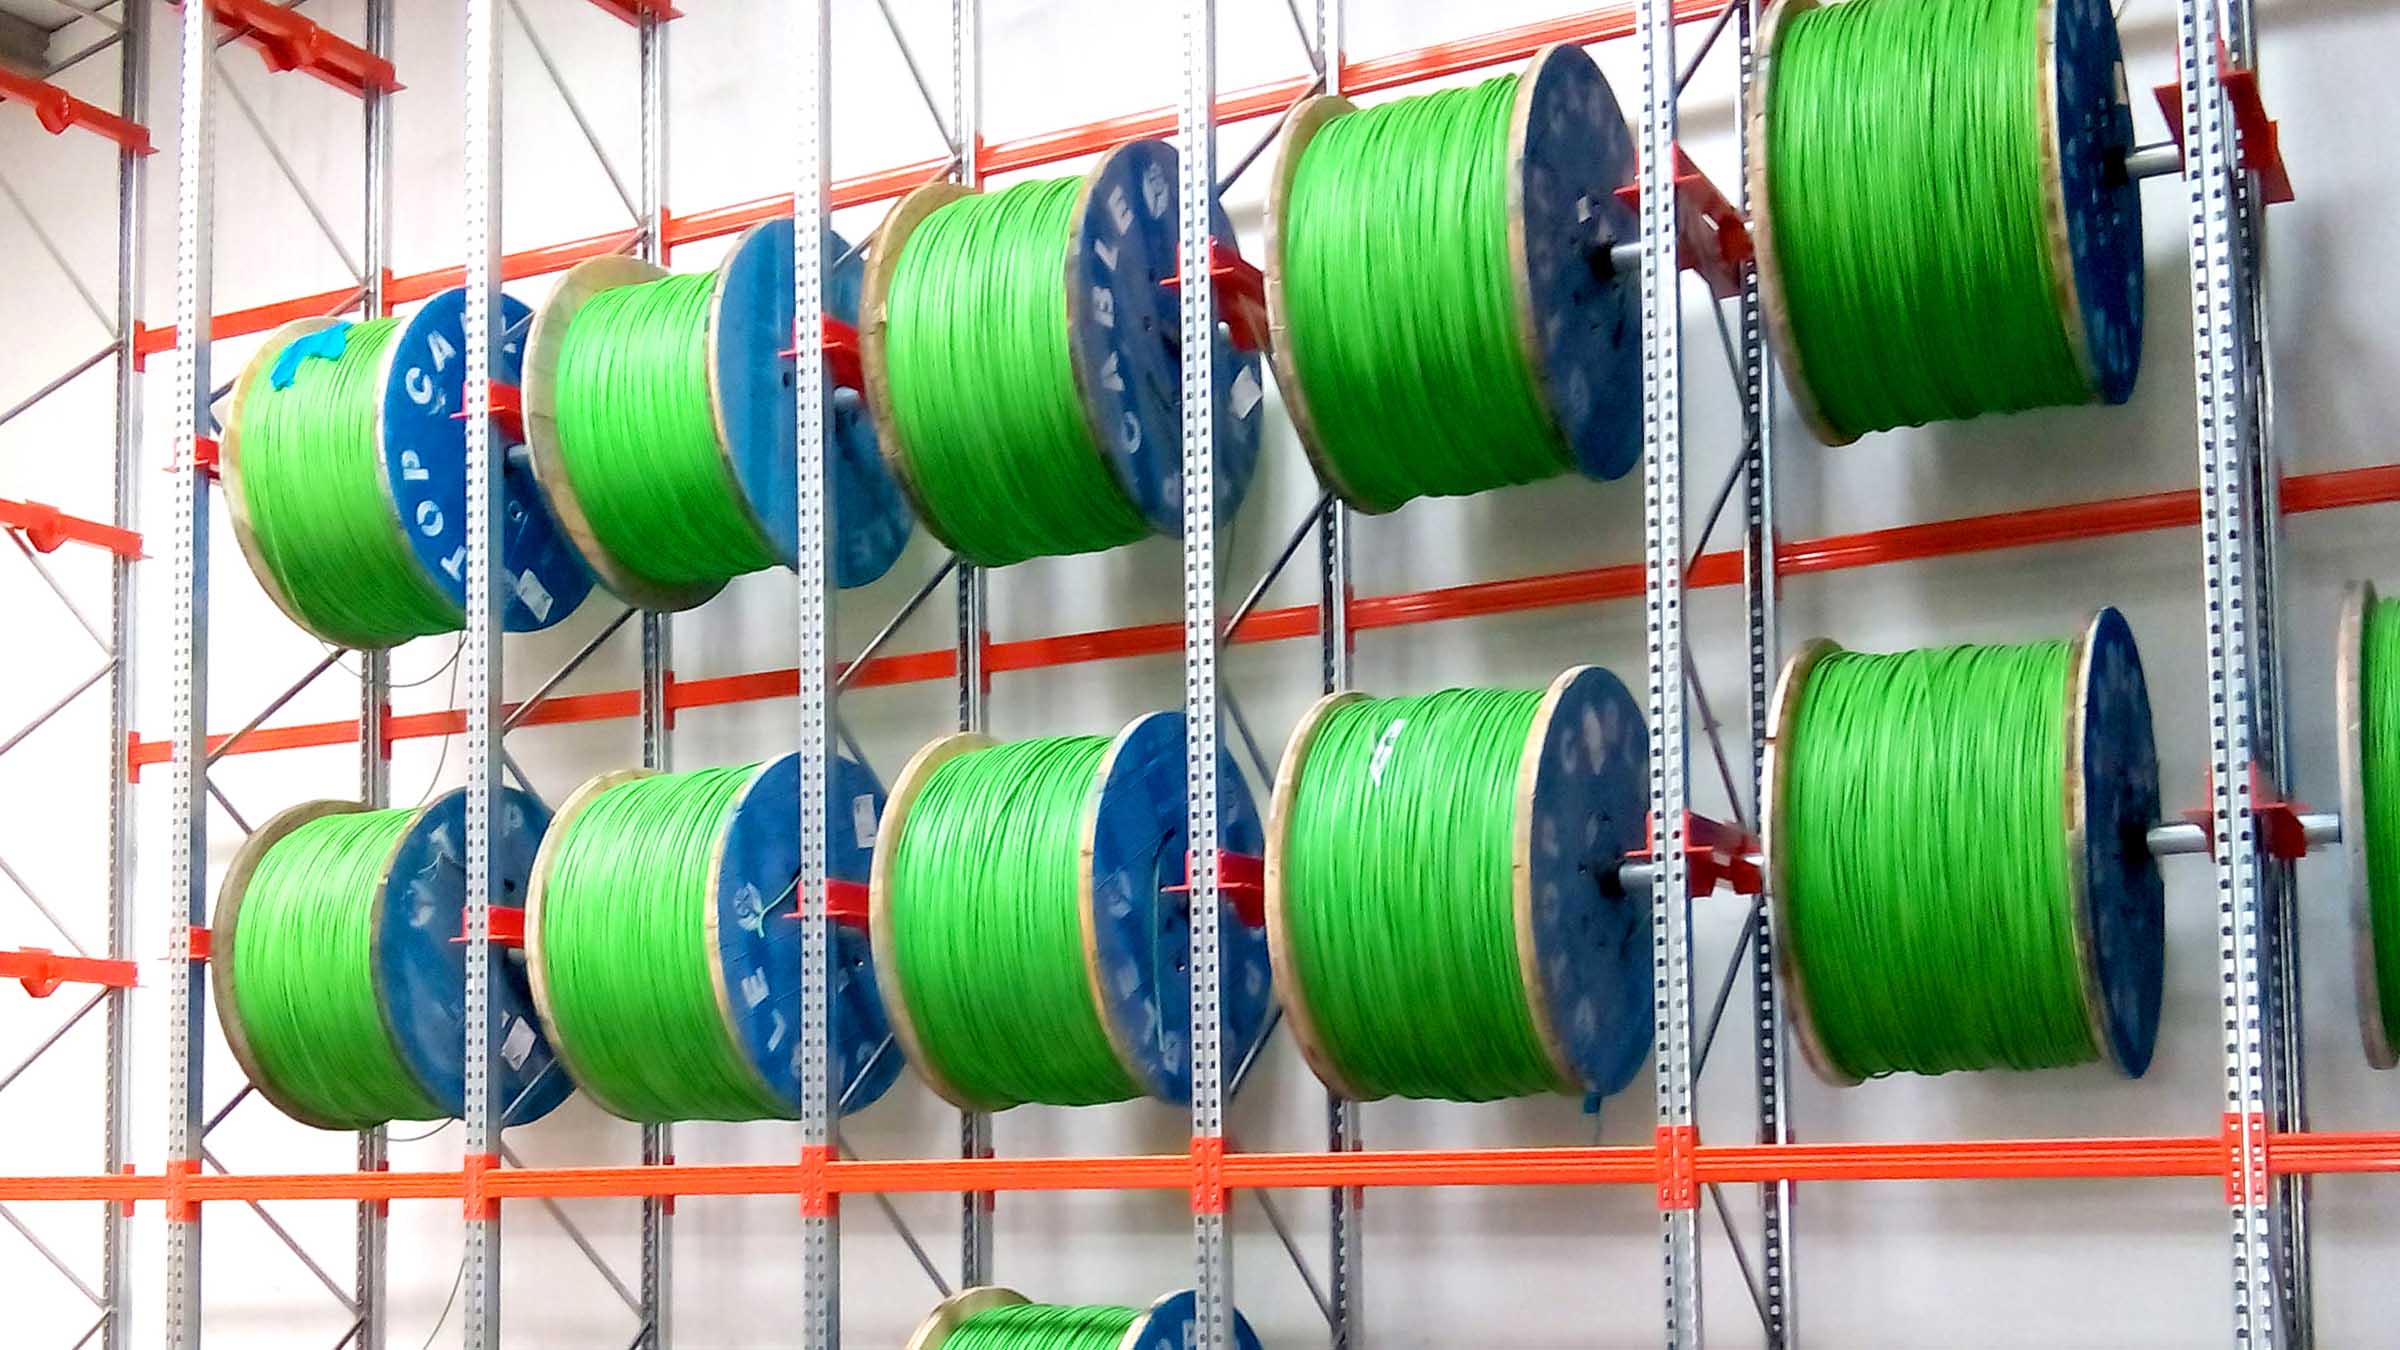 Cable Reel Rack - Industrial Storage Racks